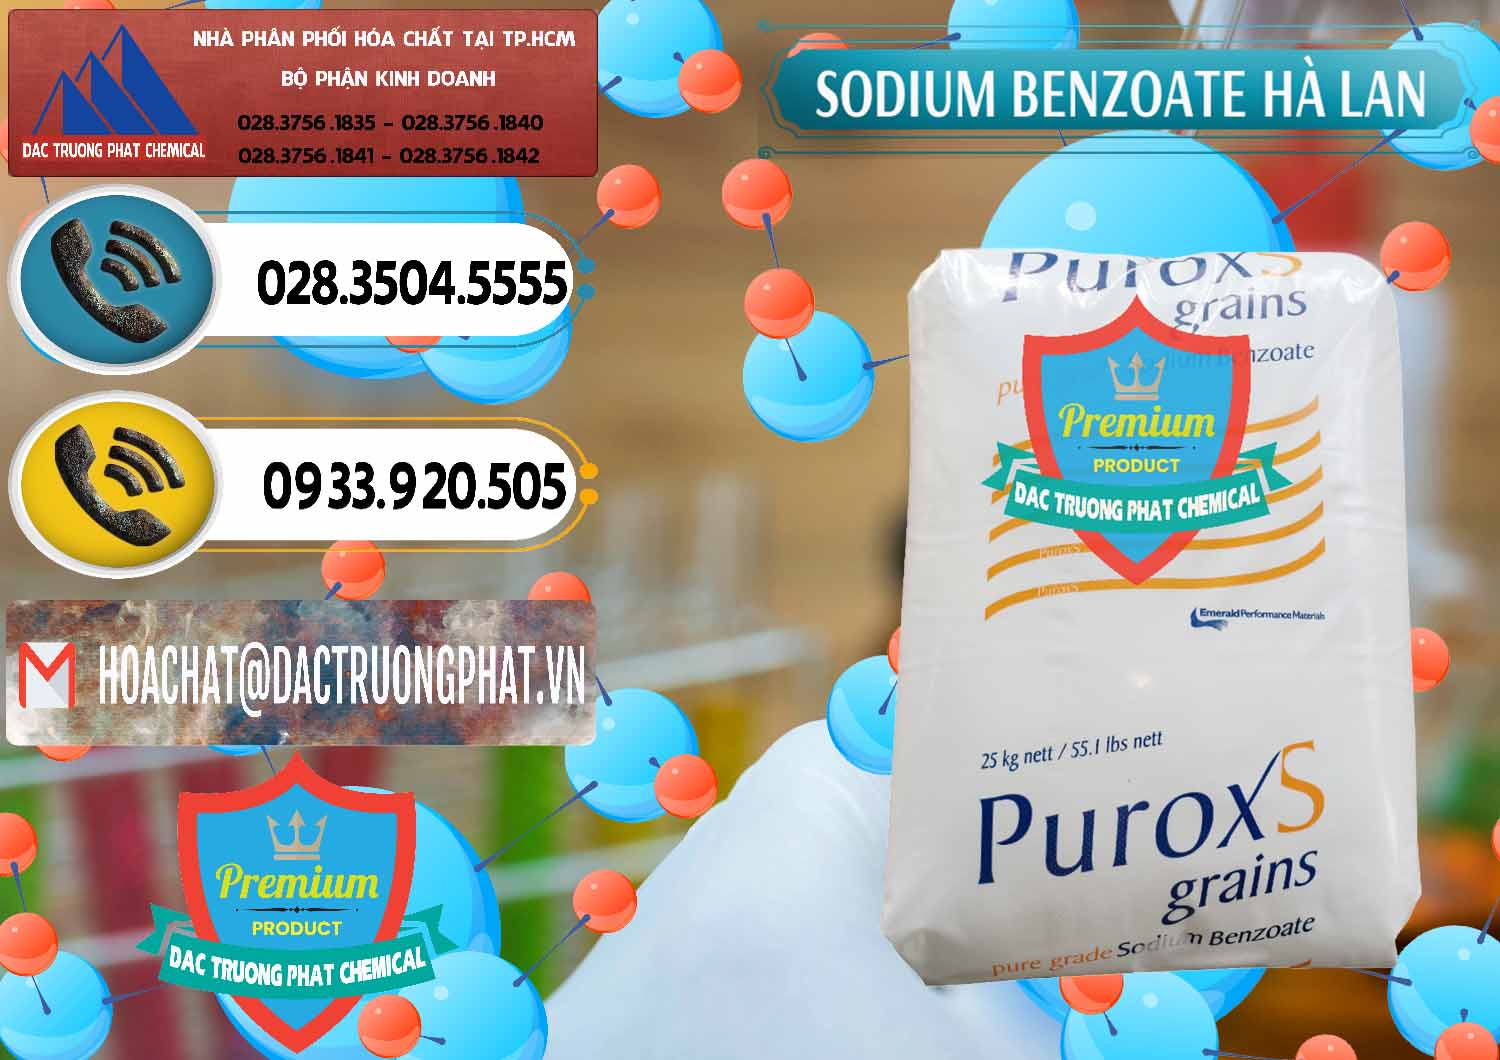 Công ty cung ứng ( bán ) Sodium Benzoate - Mốc Bột Puroxs Hà Lan Netherlands - 0467 - Cty phân phối và nhập khẩu hóa chất tại TP.HCM - hoachatdetnhuom.vn